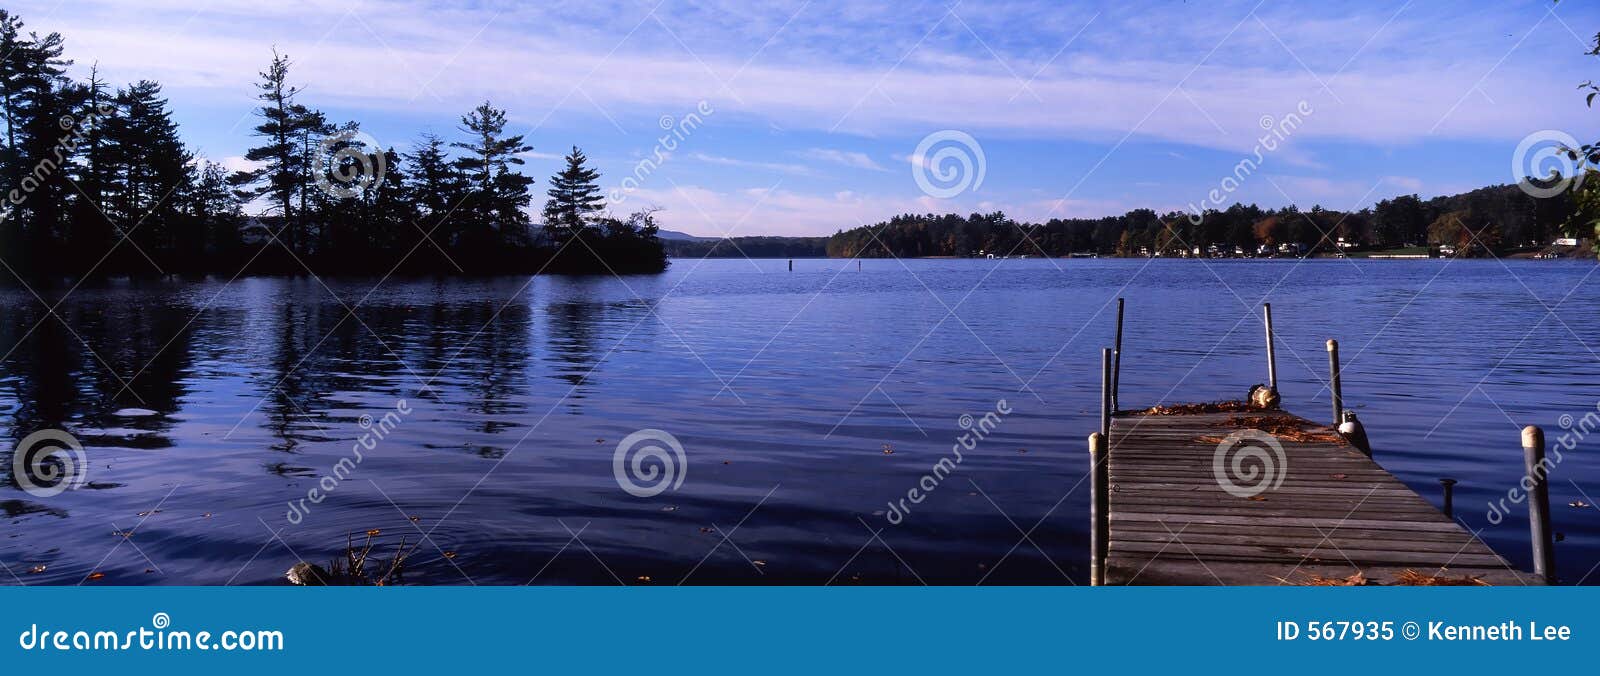 tranquil lake